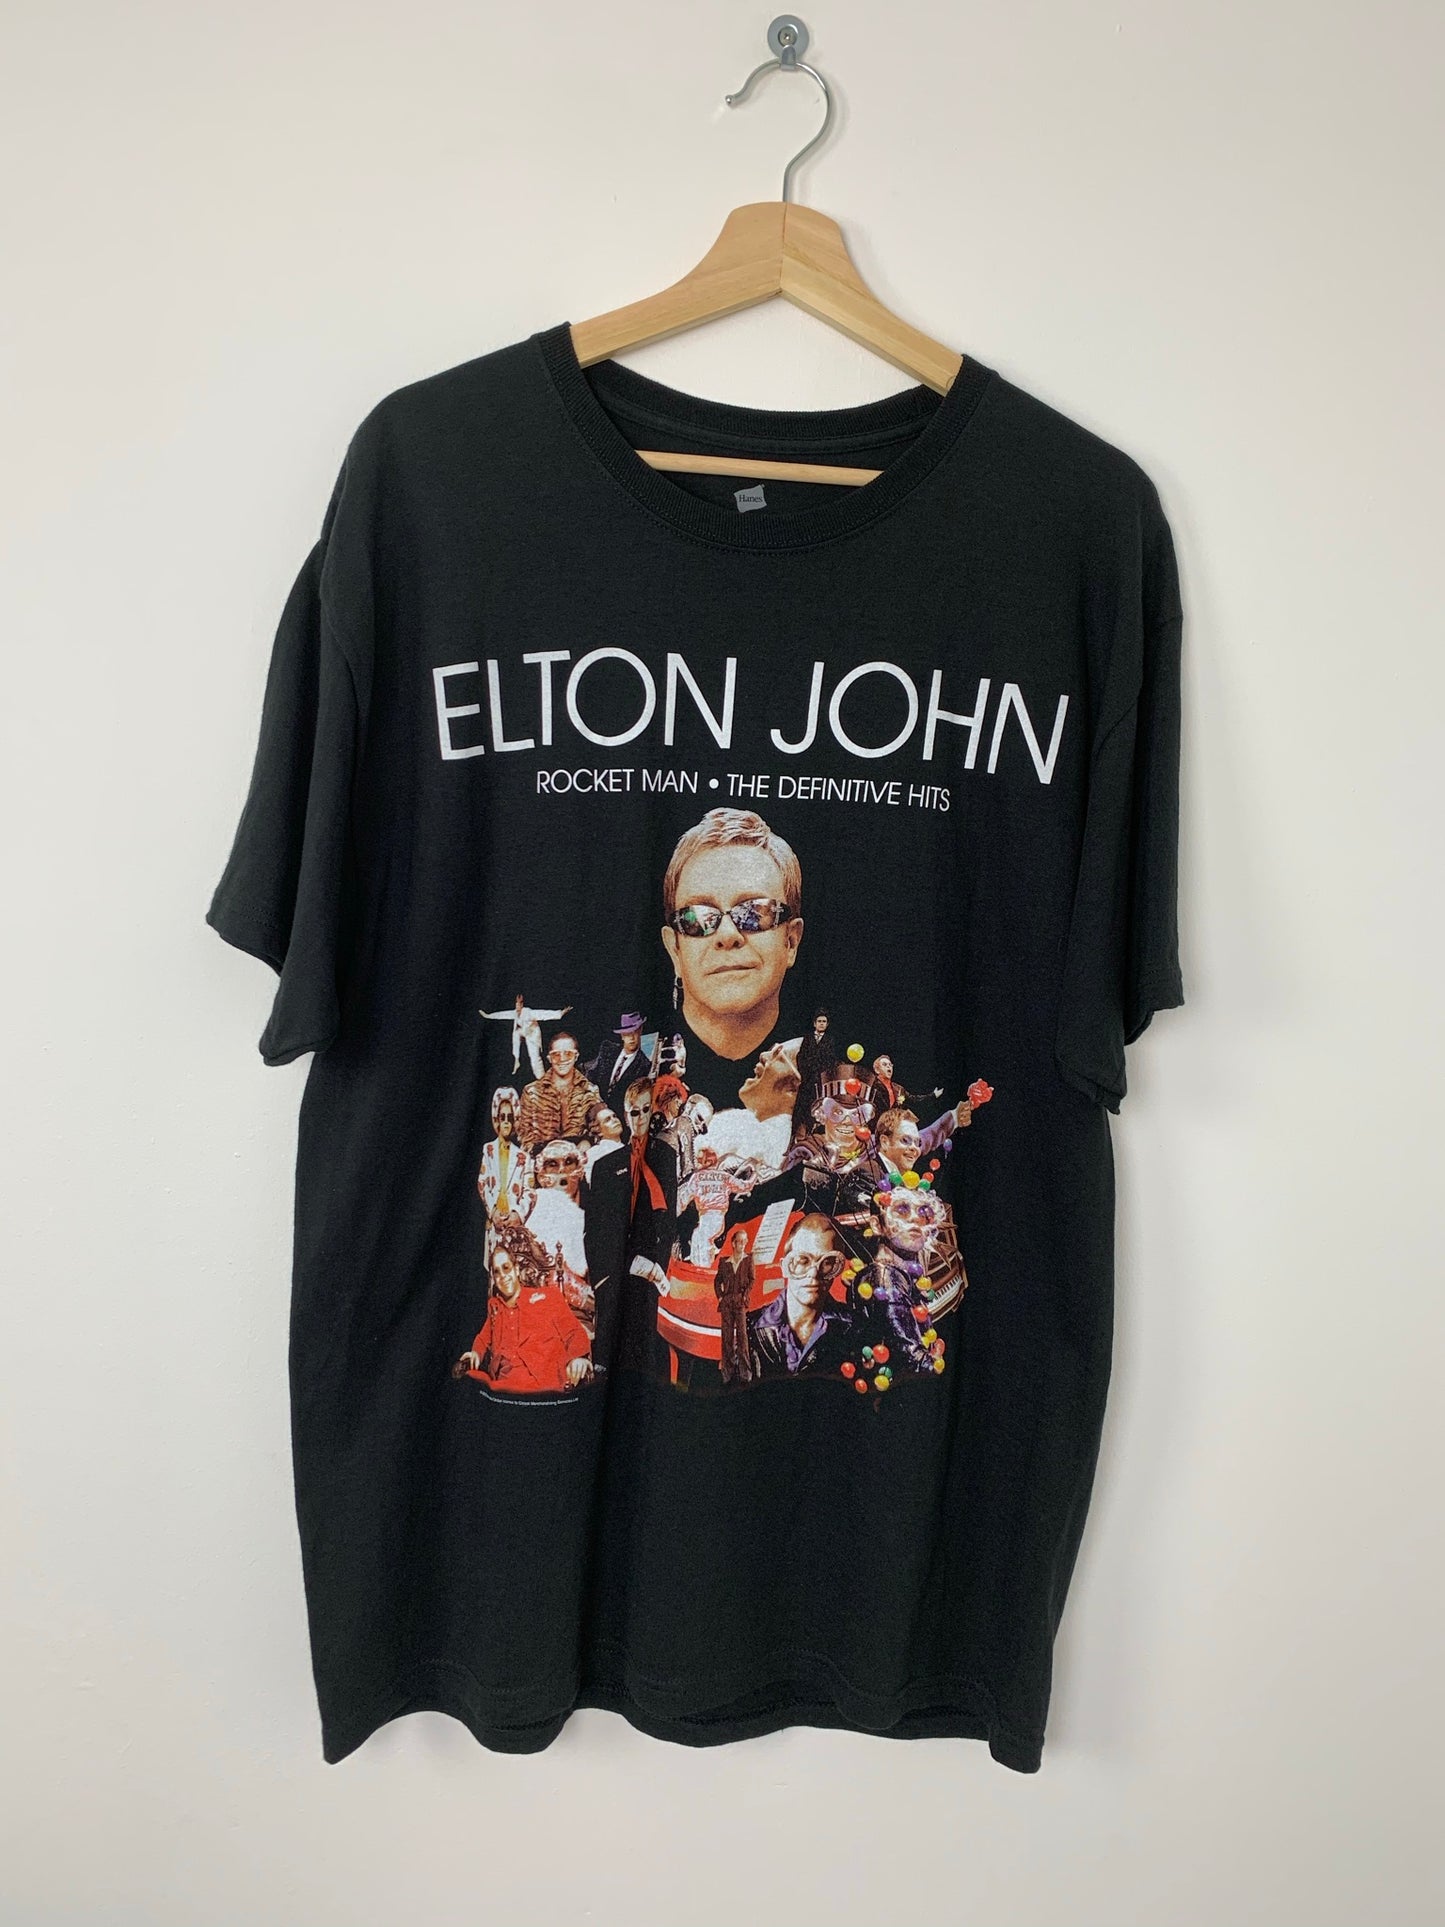 Elton John Rocket Man The Definitive Hits World Tour 2012 T-Shirt